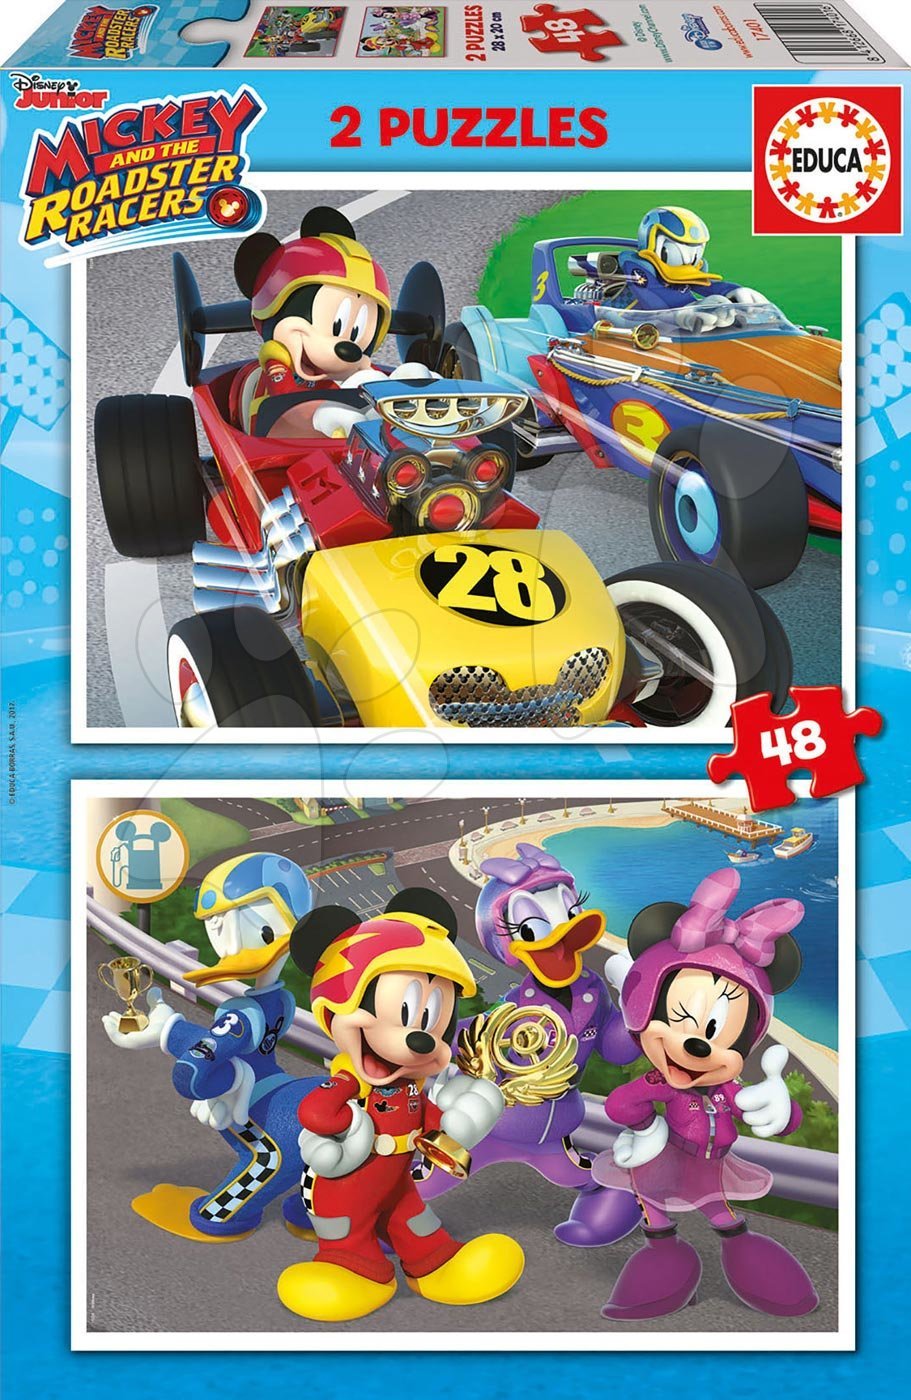 Detské puzzle do 100 dielov - Puzzle Mickey and the roadster racers Educa 2x48 dielov od 5 rokov